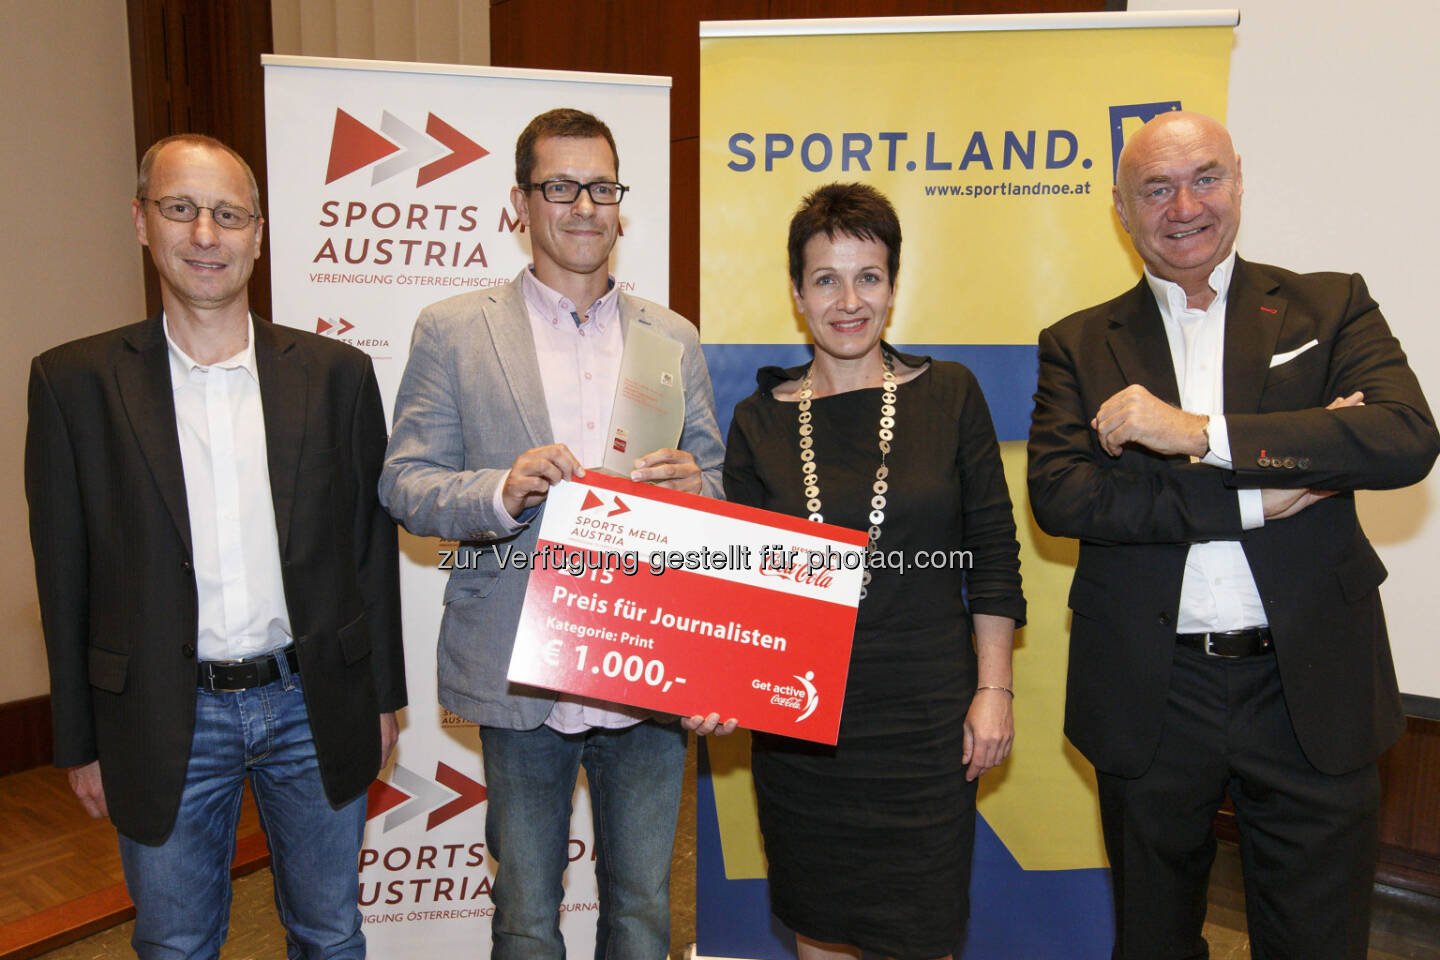  Fritz Neumann - Der Standard: Gewinner des Sports Media Austria Journalistenpreis in der Kategorie Print